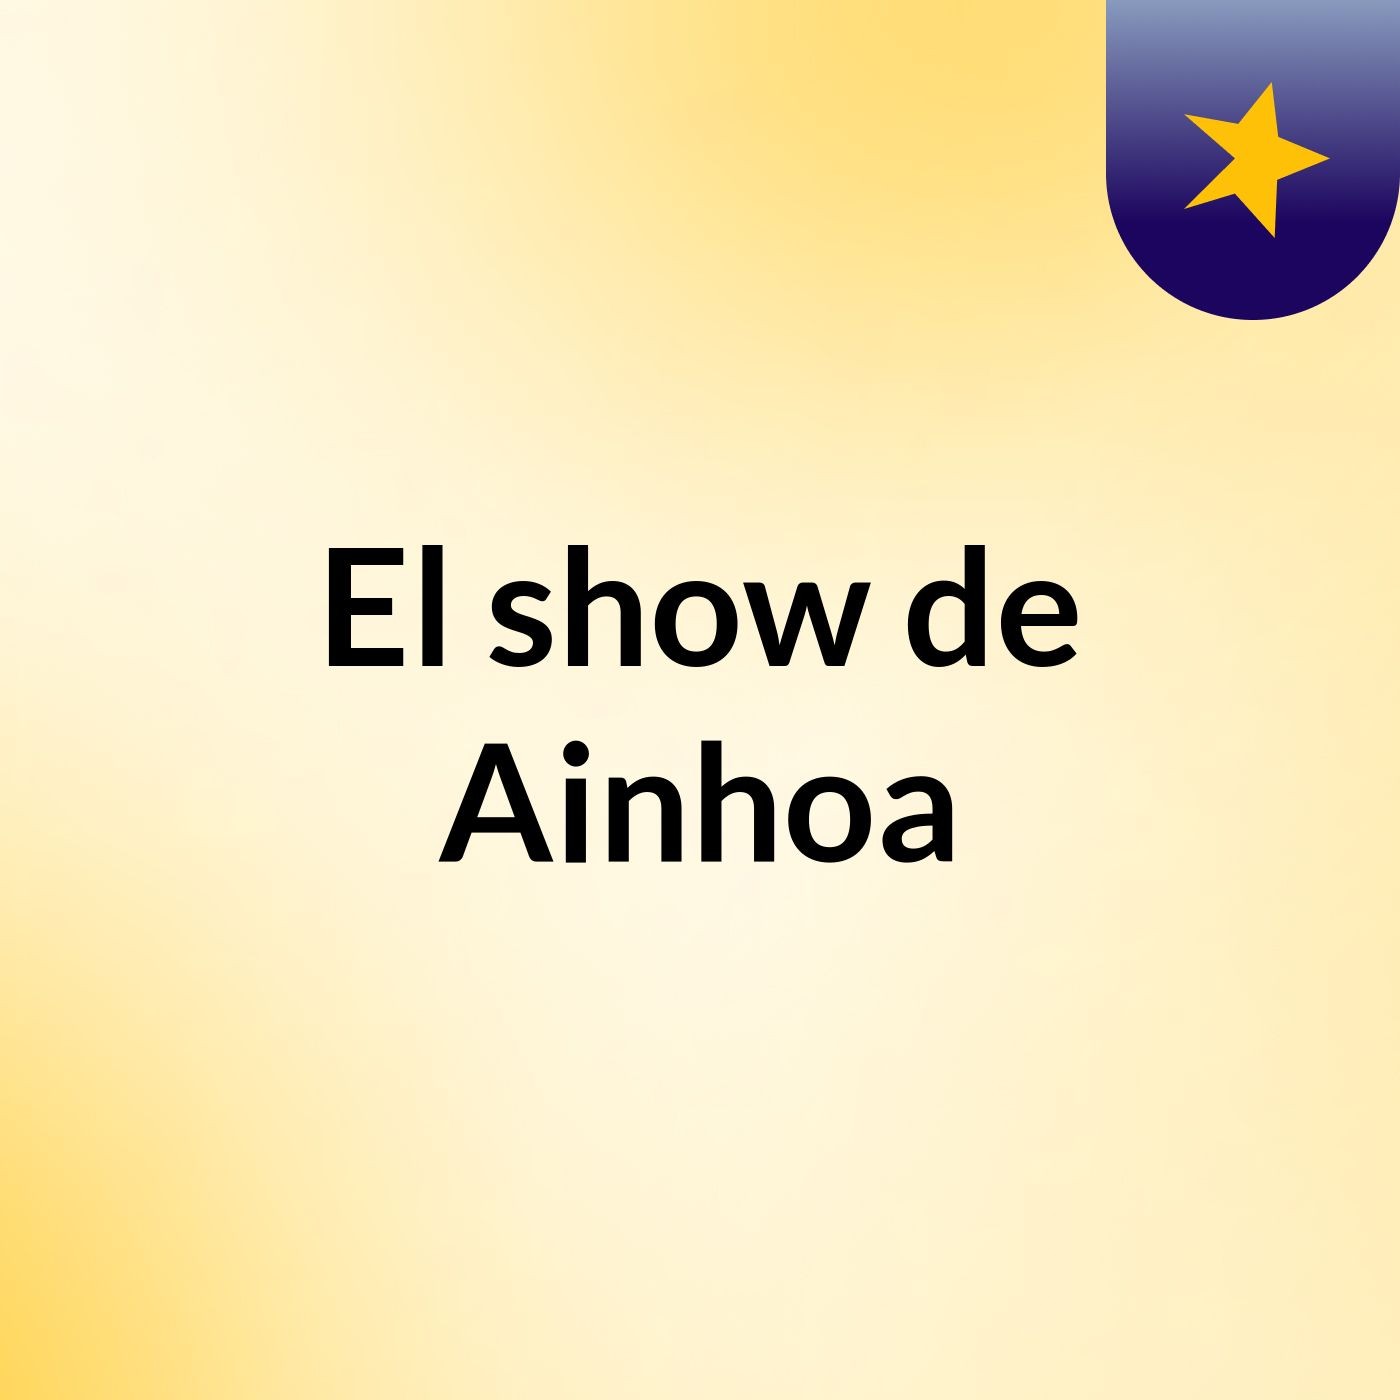 El show de Ainhoa